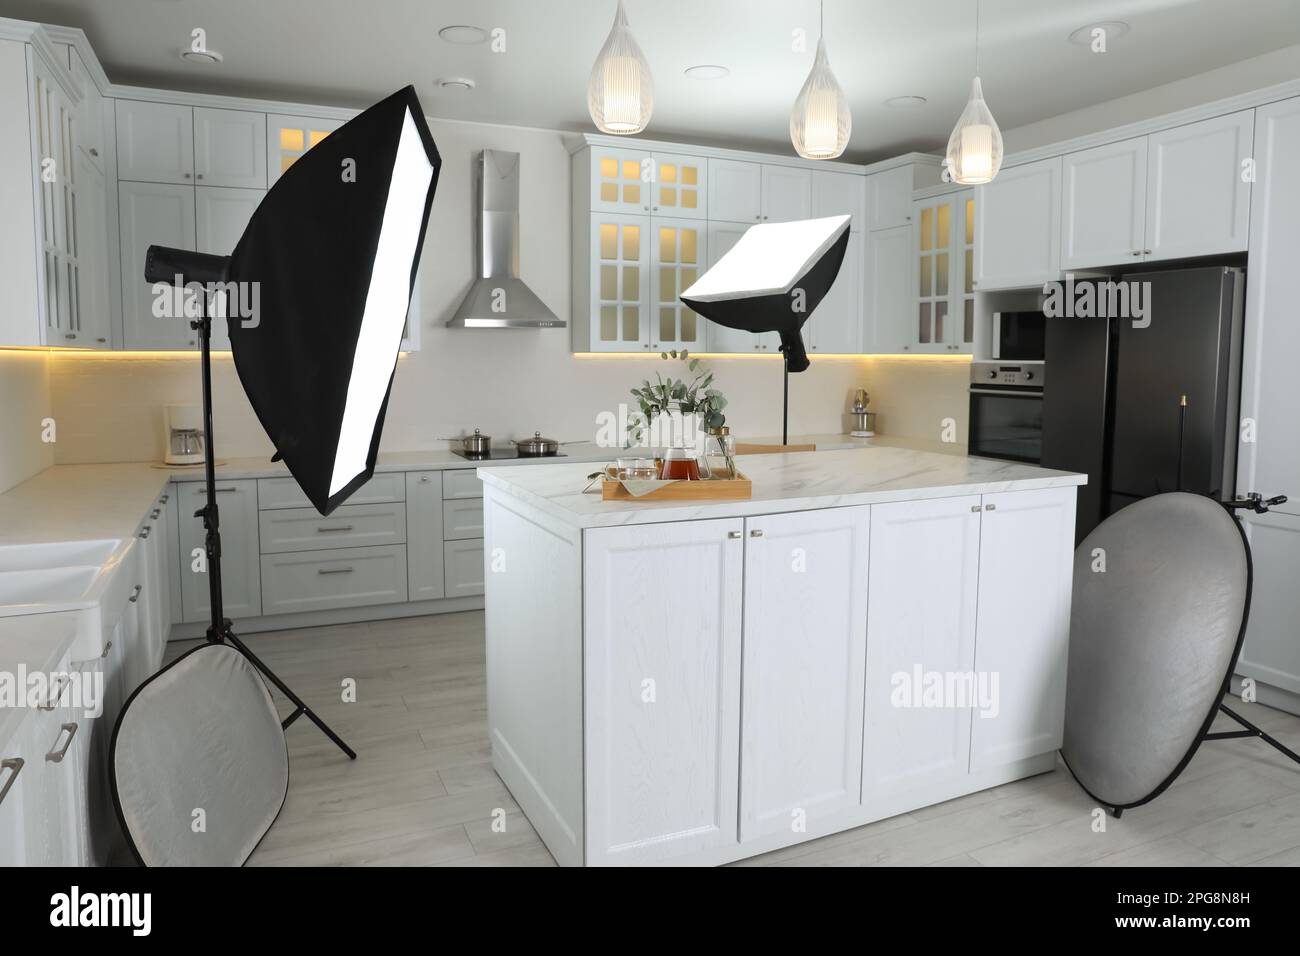 Équipement professionnel de studio photo préparé pour photographier l'intérieur de la cuisine Banque D'Images